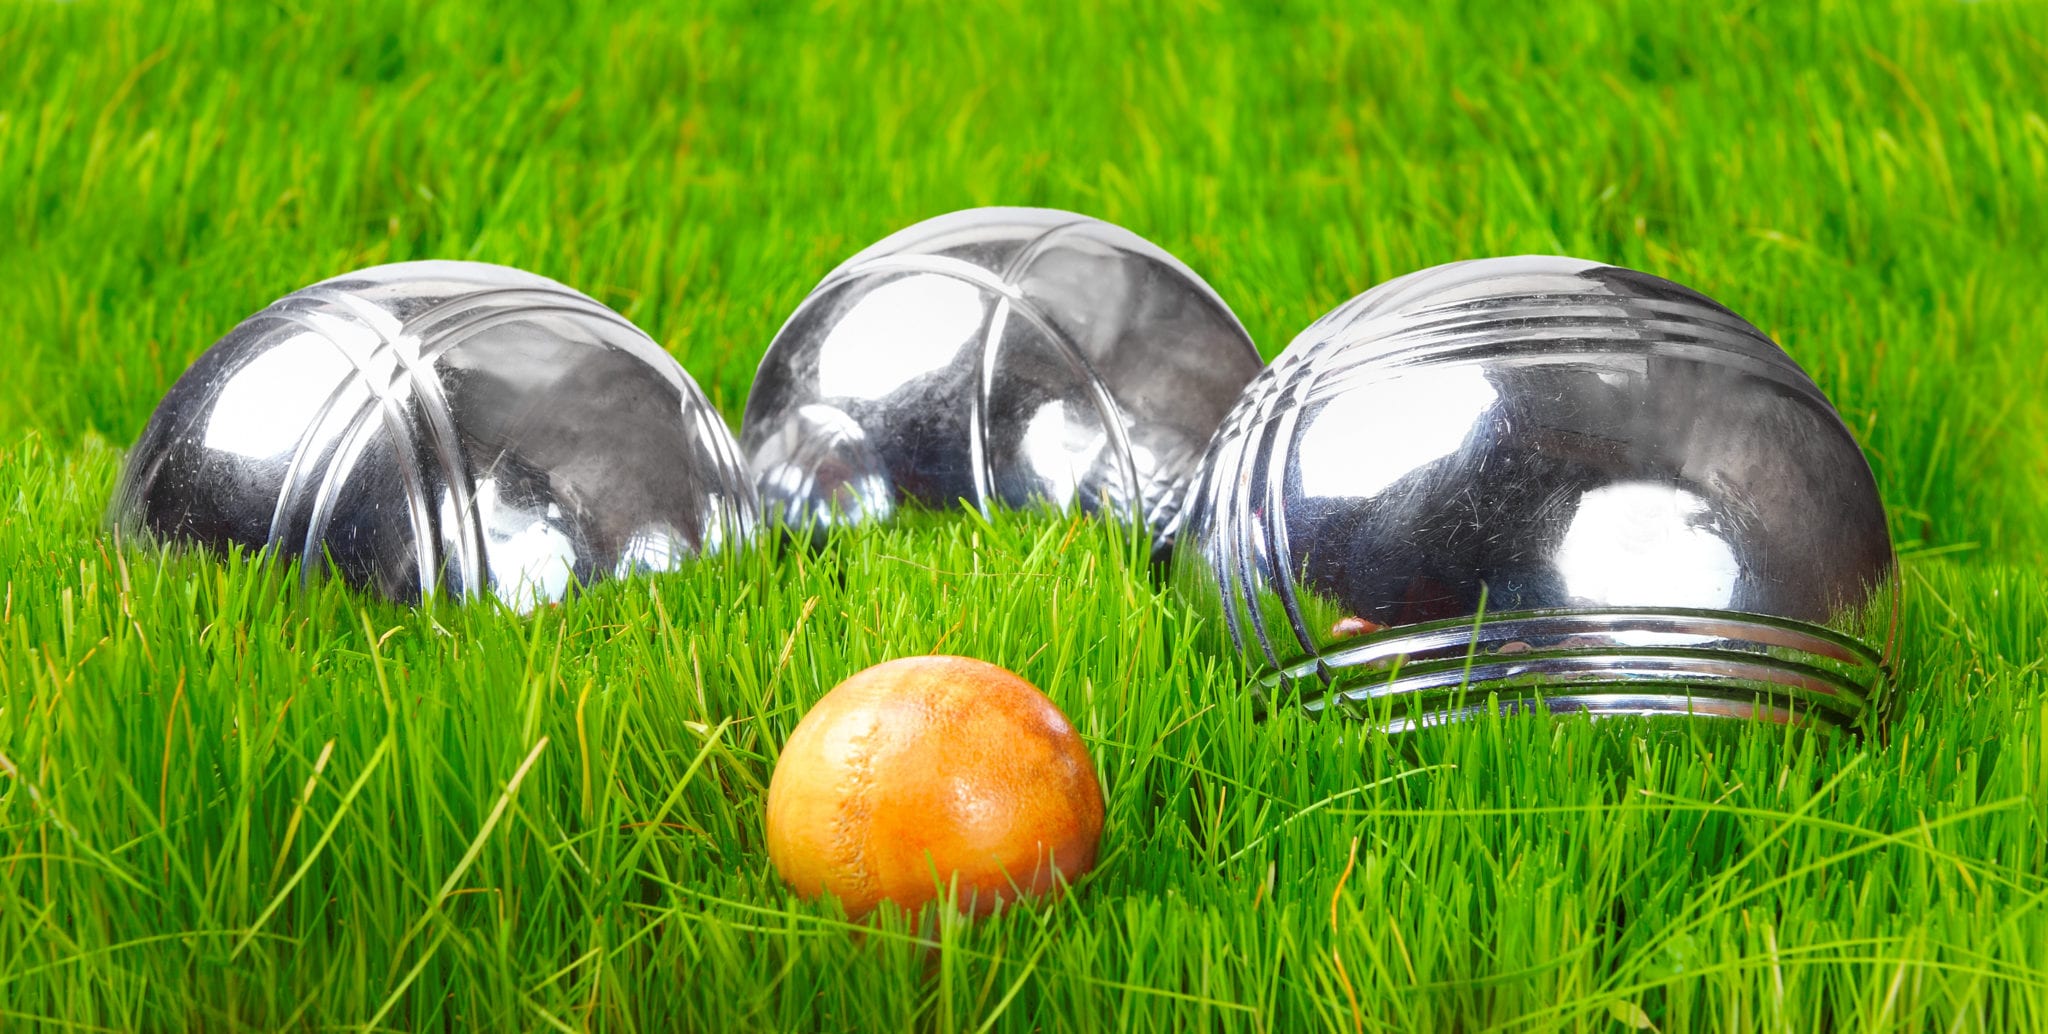 The petanque balls on a green grass.